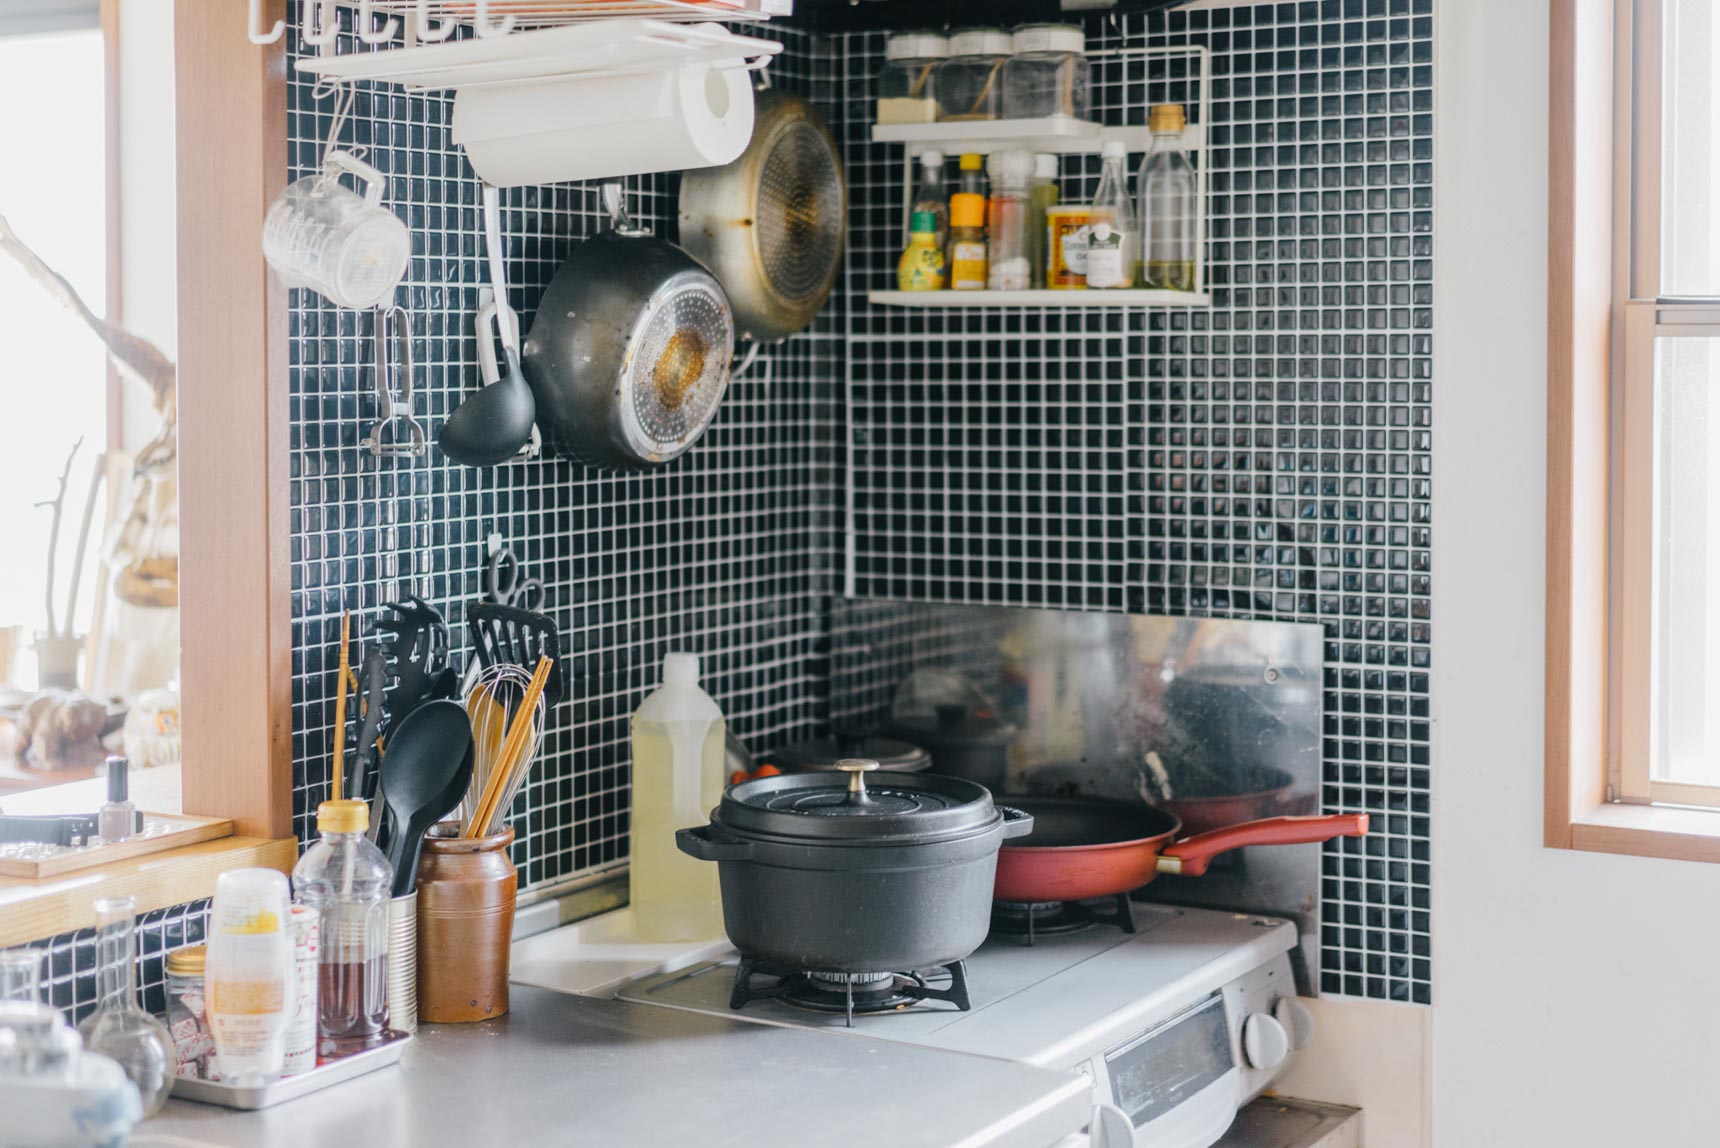 賃貸のキッチンや洗面台を、おしゃれに。「タイルシール」を使った、簡単DIY実例まとめ